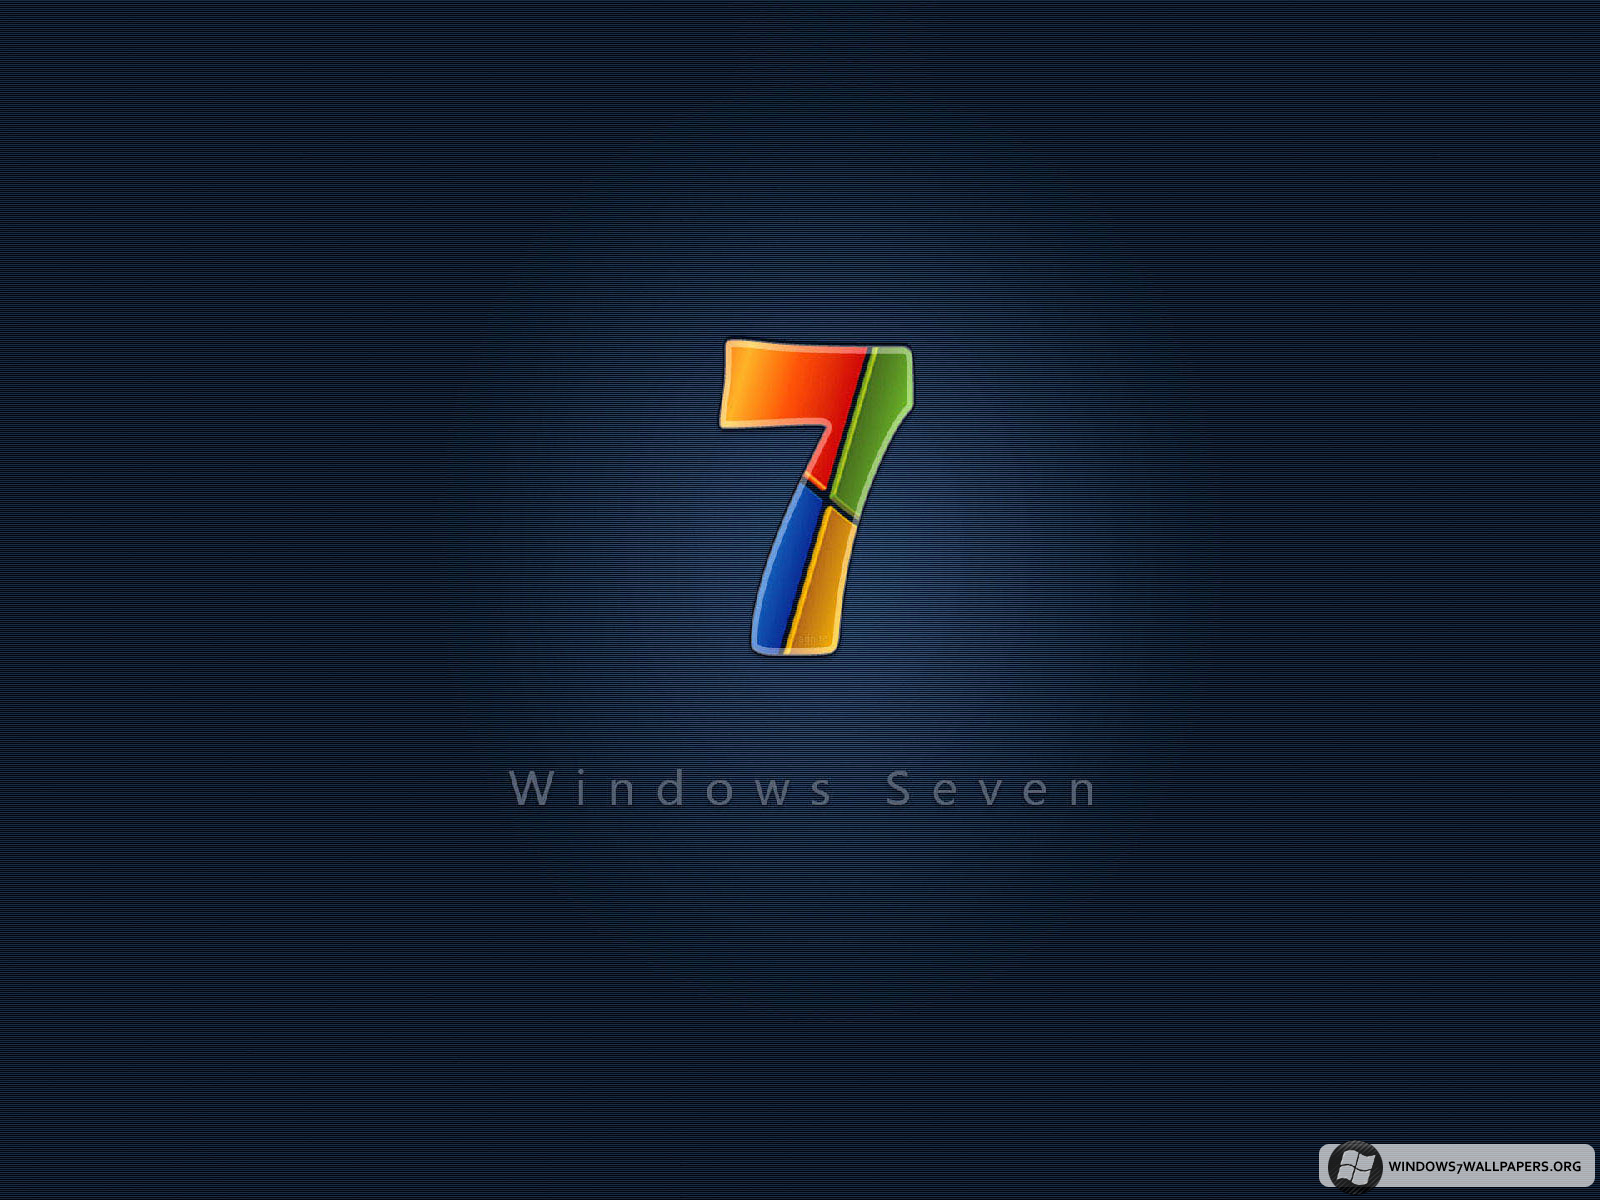  desktop backgrounds for windows 7 desktop backgrounds for windows 7